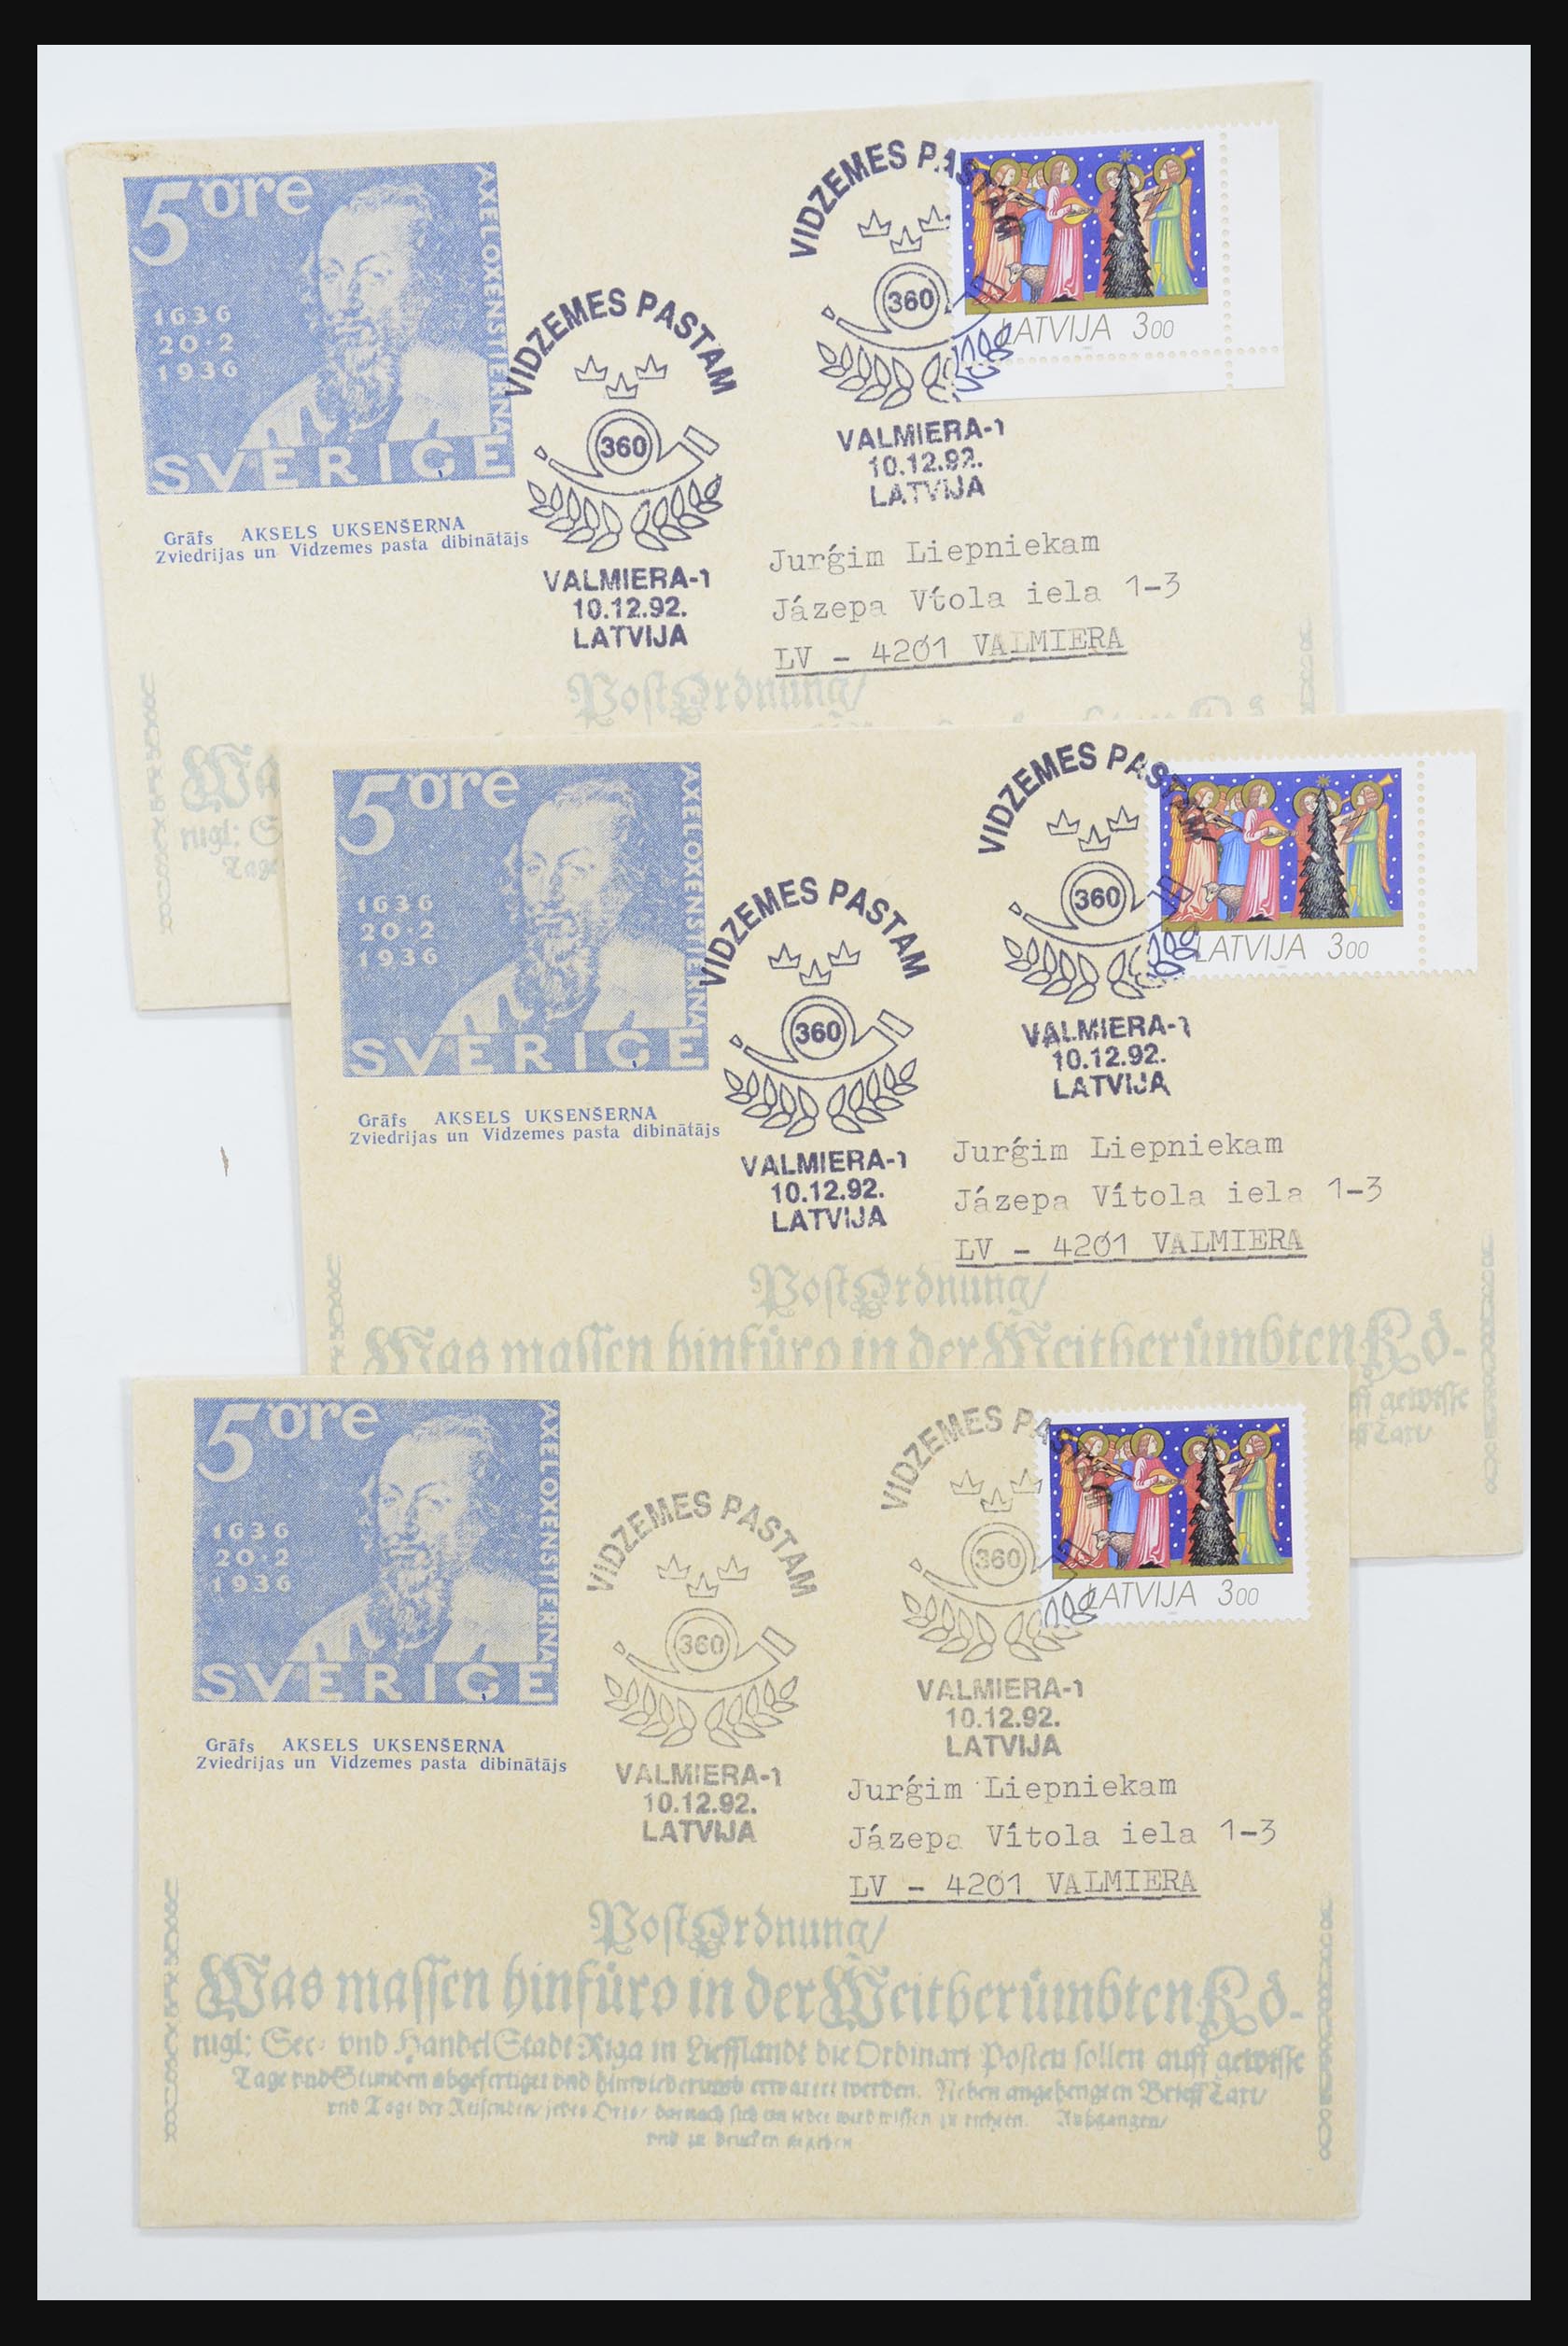 31584 597 - 31584 Letland brieven/FDC's en postwaardestukken 1990-1992.